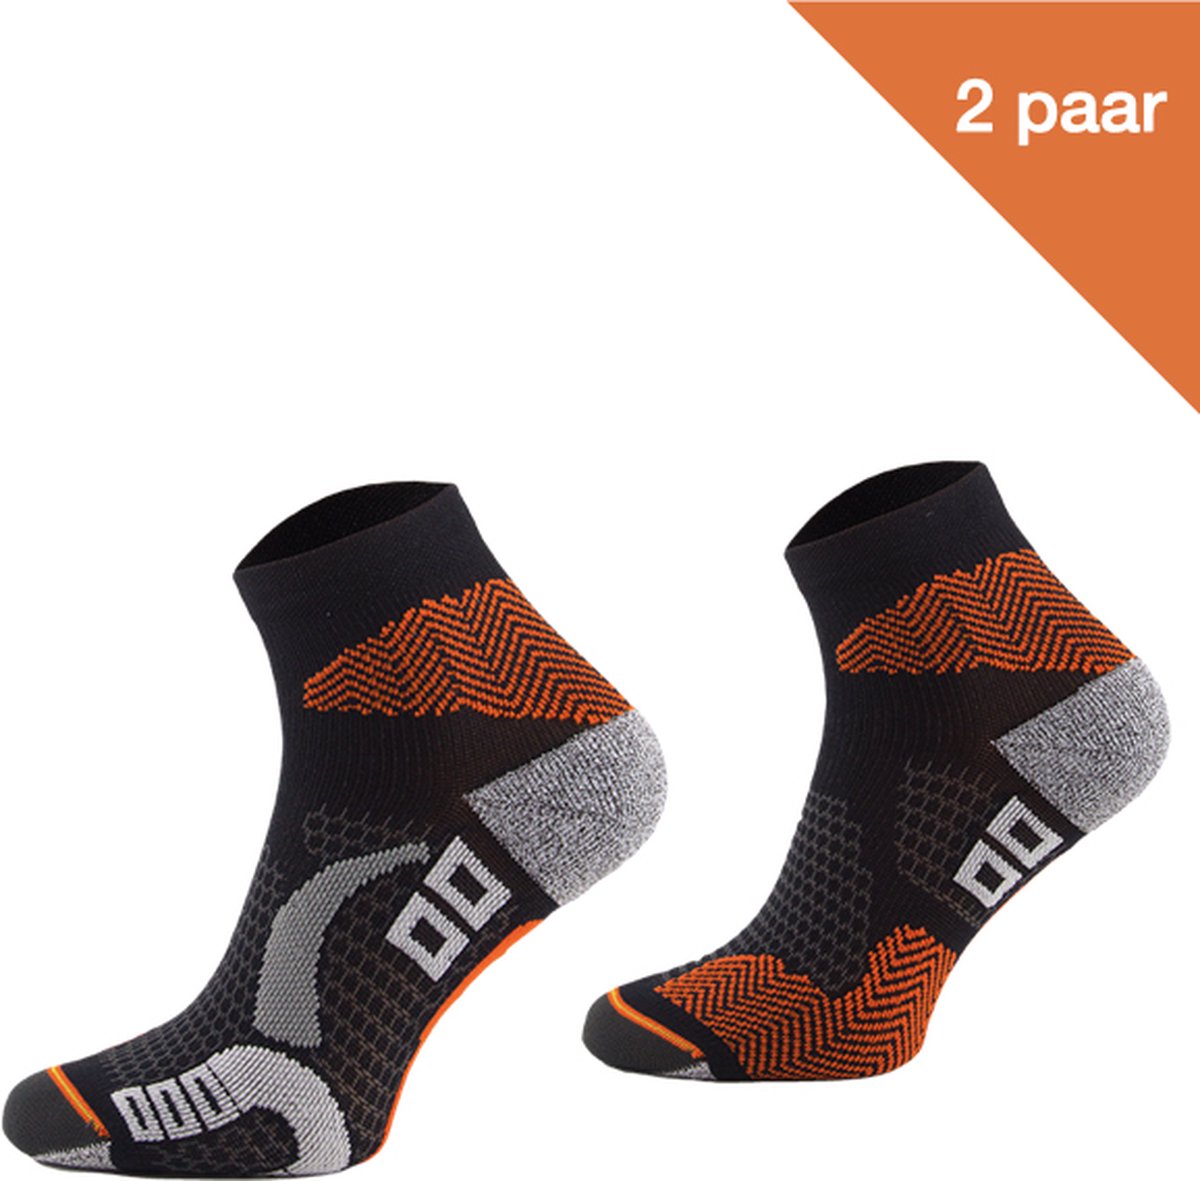 Comodo Hardloopsokken Polyamide RUN1 - Zwart/Oranje - 2 paar - Maat 43-46